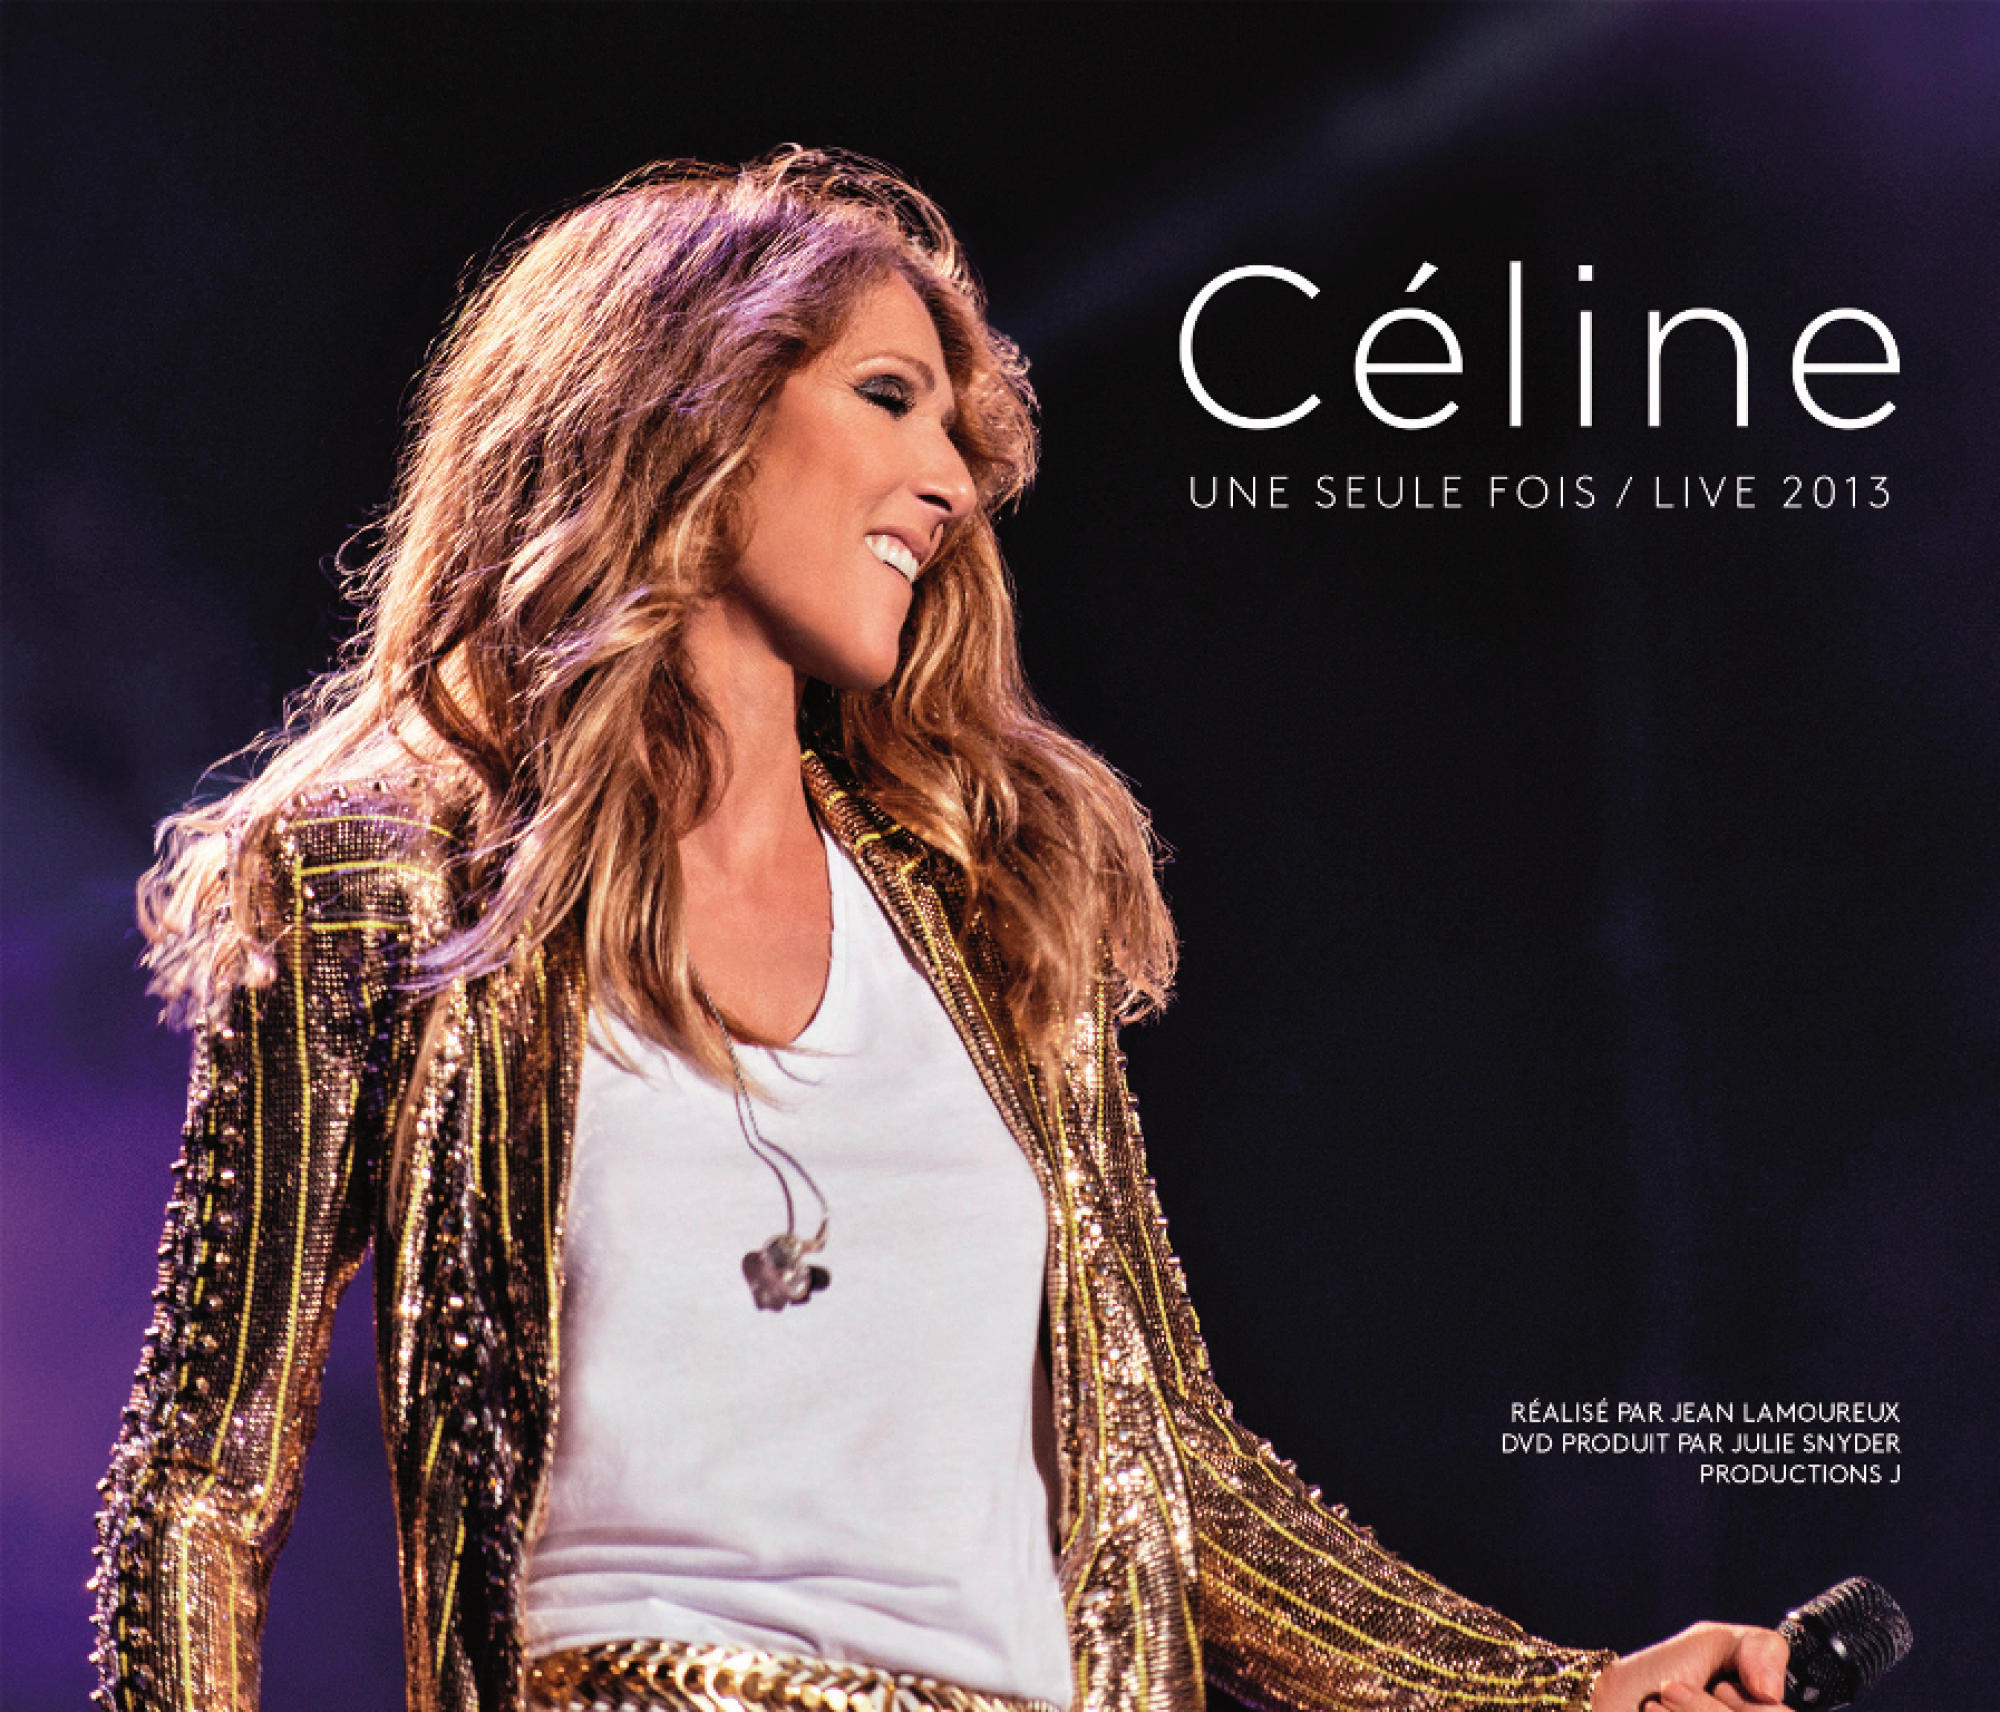 Céline Dion - Video) + 2013 DVD - (CD Fois/Live Seule Céline...Une